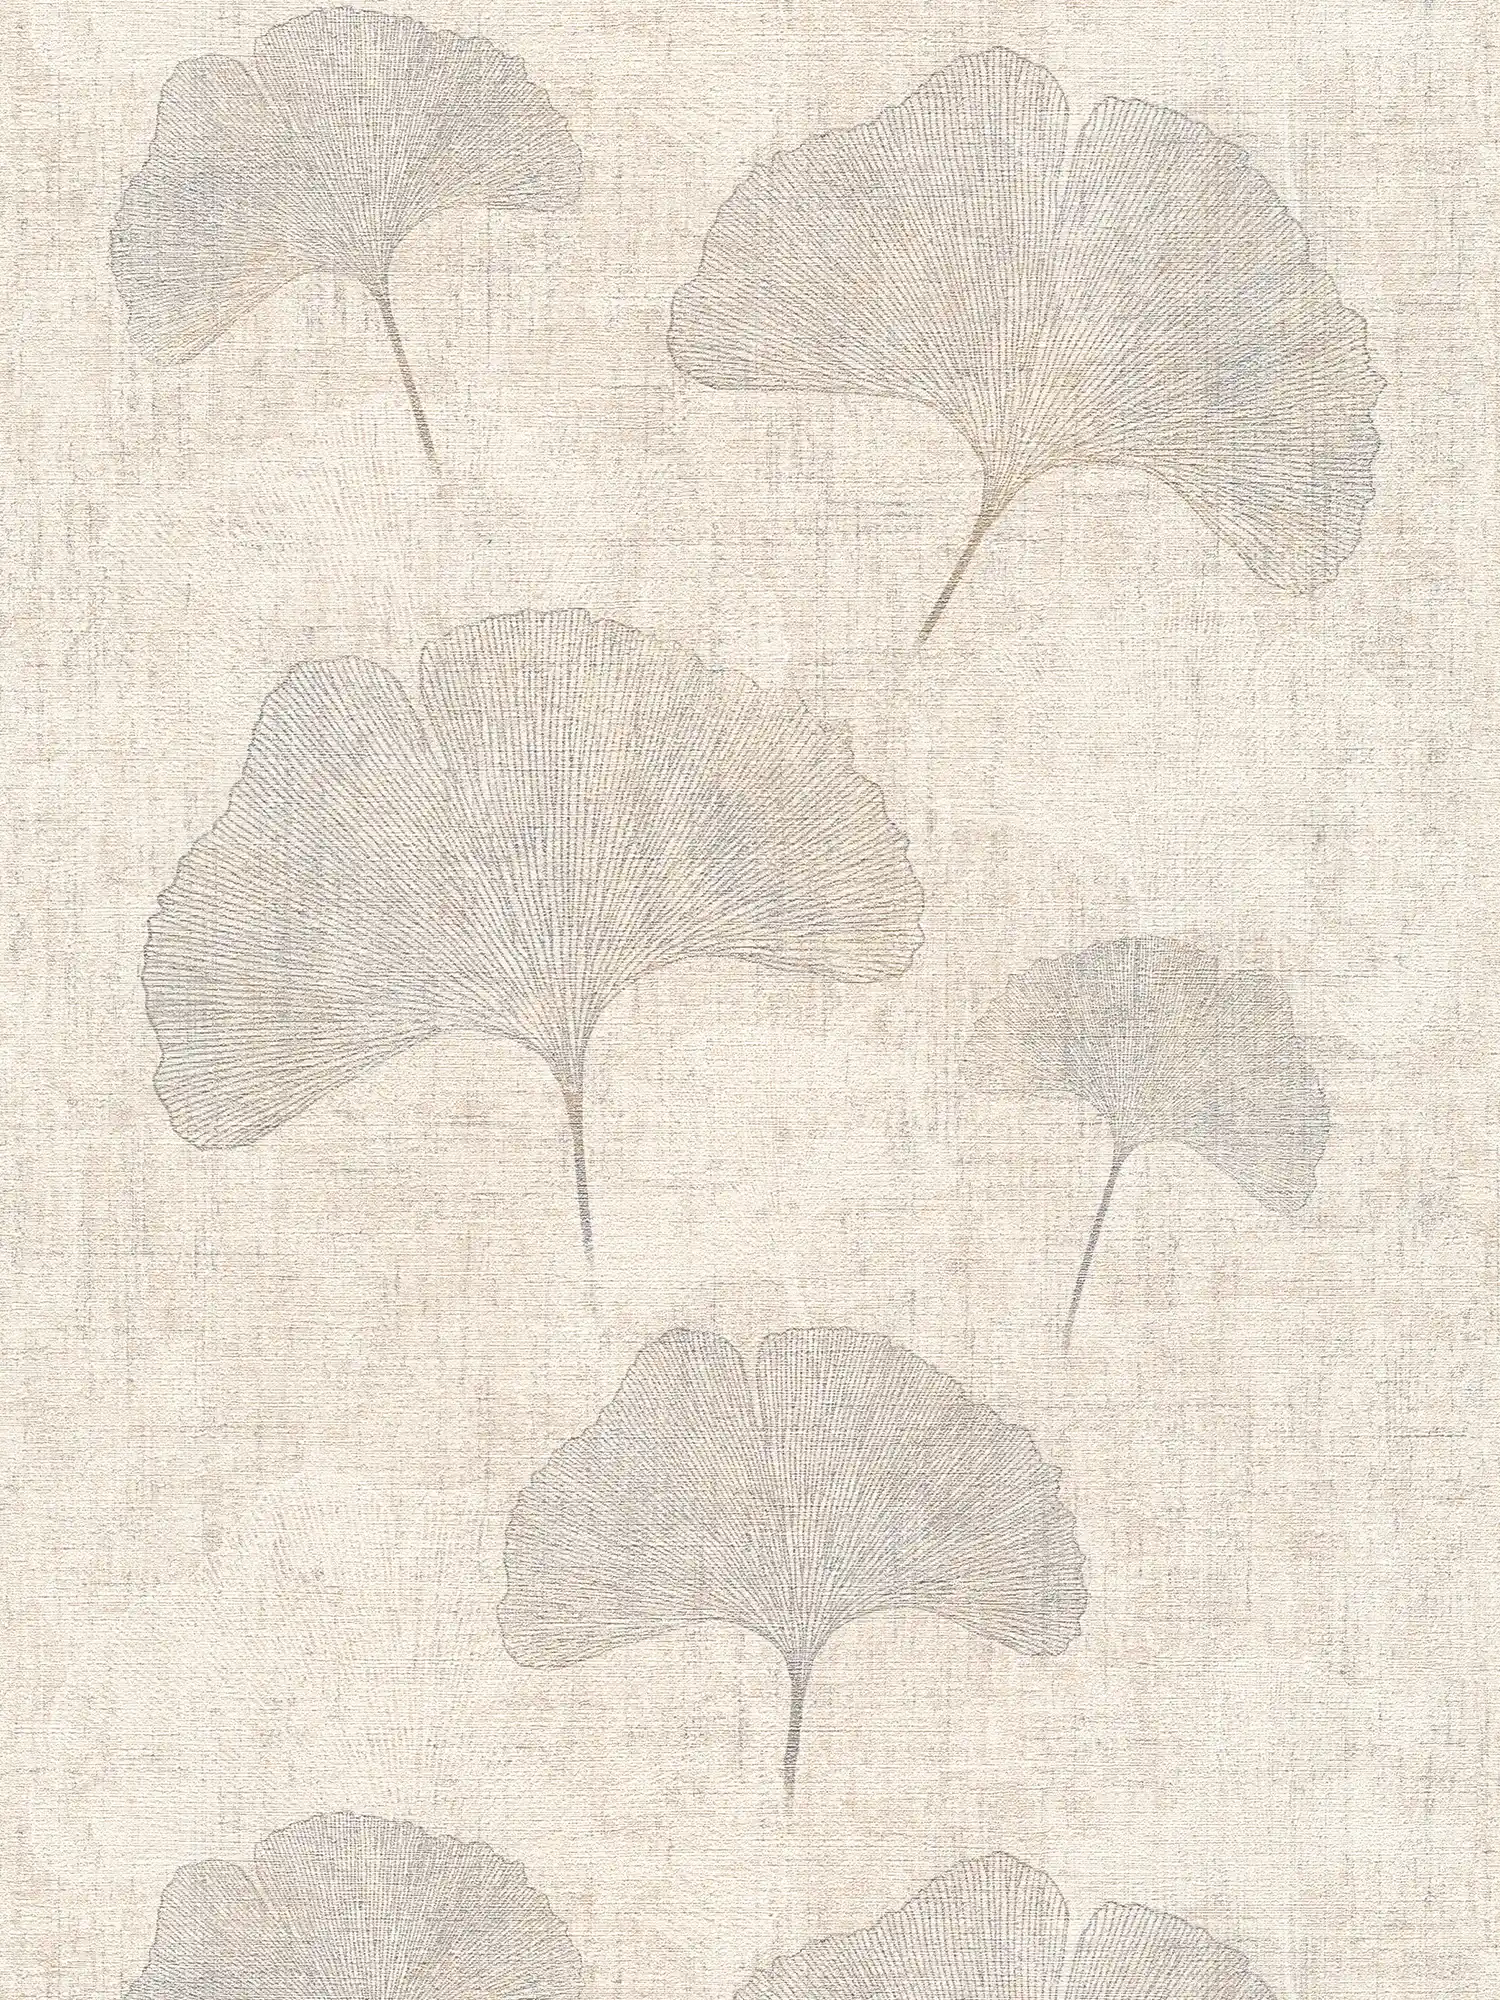 Wallpaper ginko leaves metallic effect, linen look- beige, silver, brown
